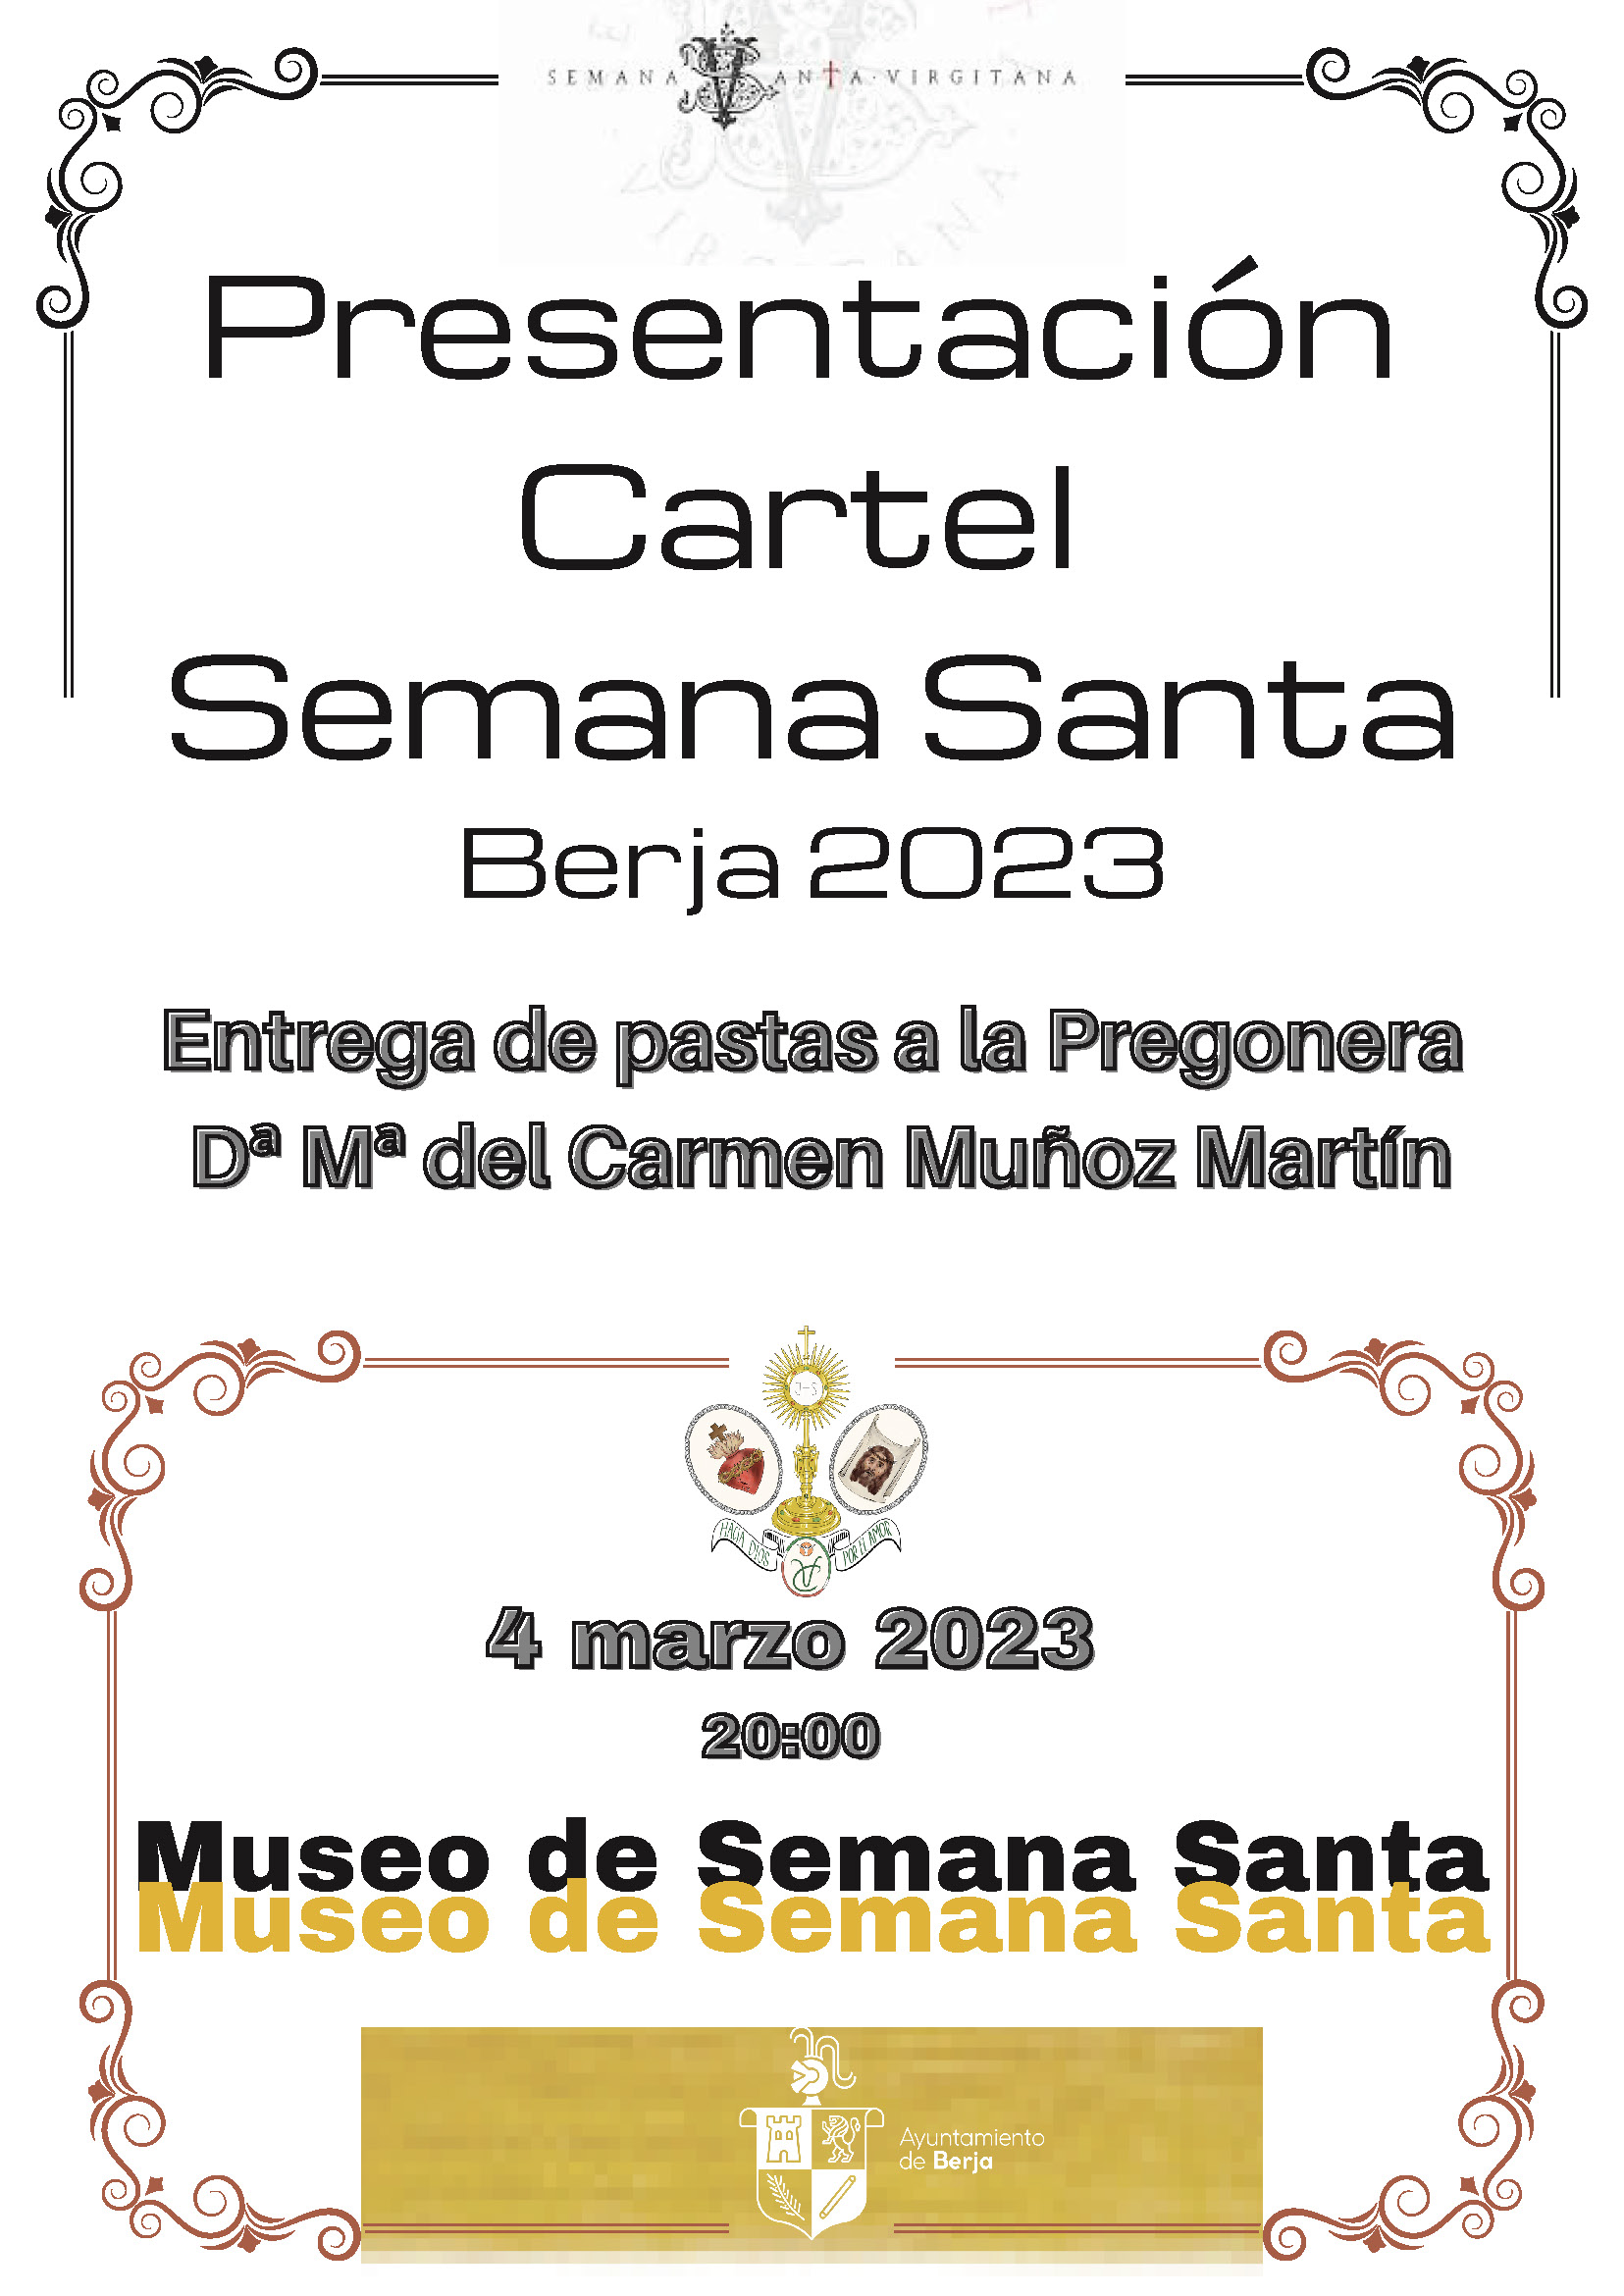 La cofradía de la Verónica revela este sábado el cartel de la Semana Santa de Berja 2023 